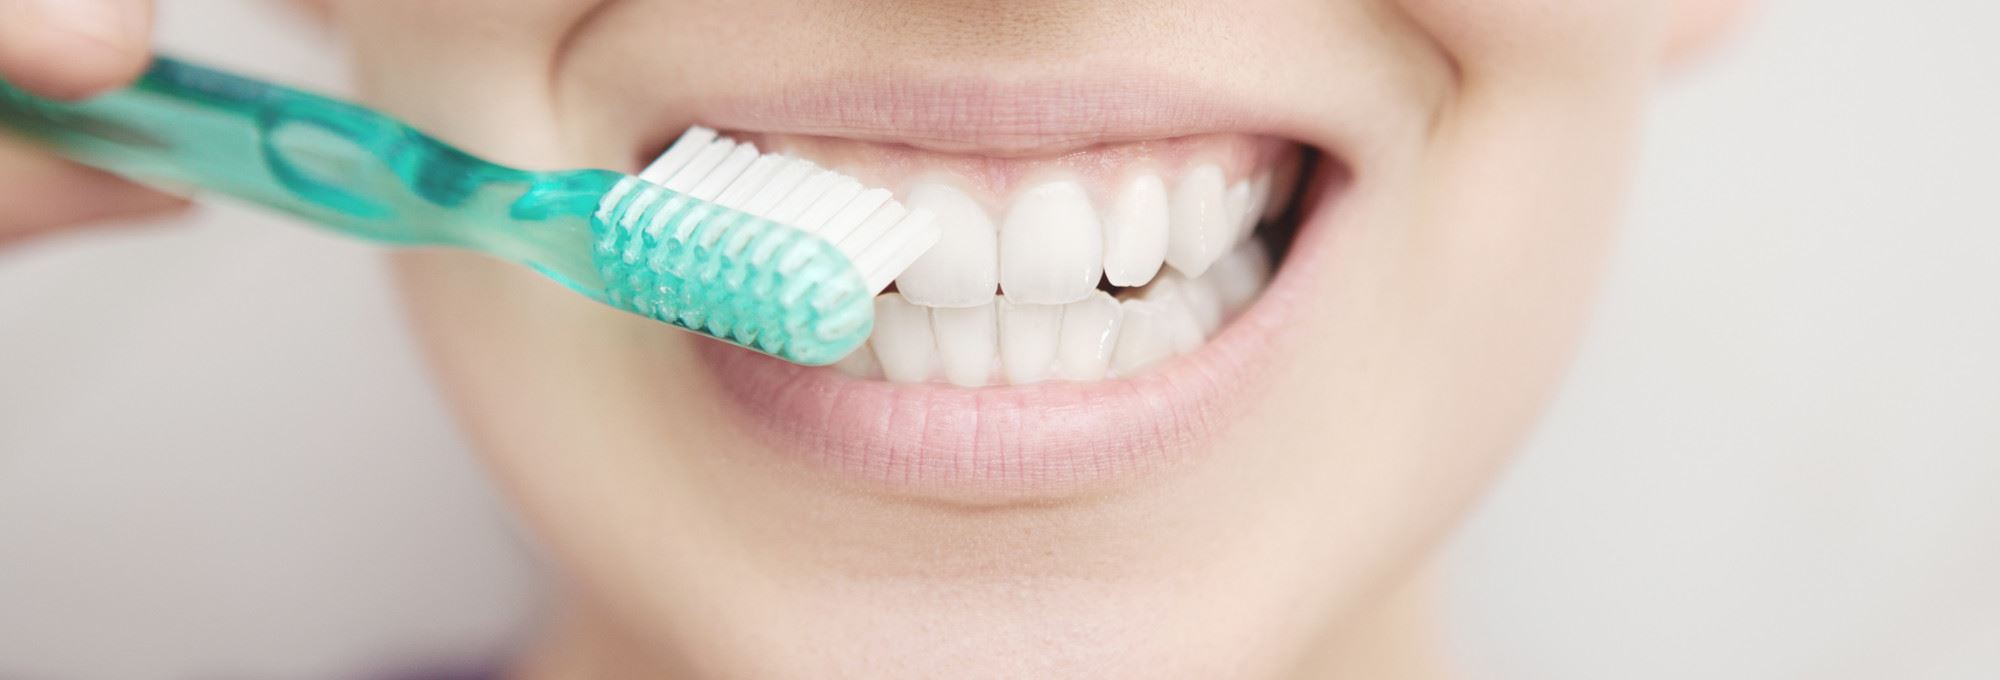 Come si lavano i denti? Ecco i consigli di Brush per un’igiene orale efficace!